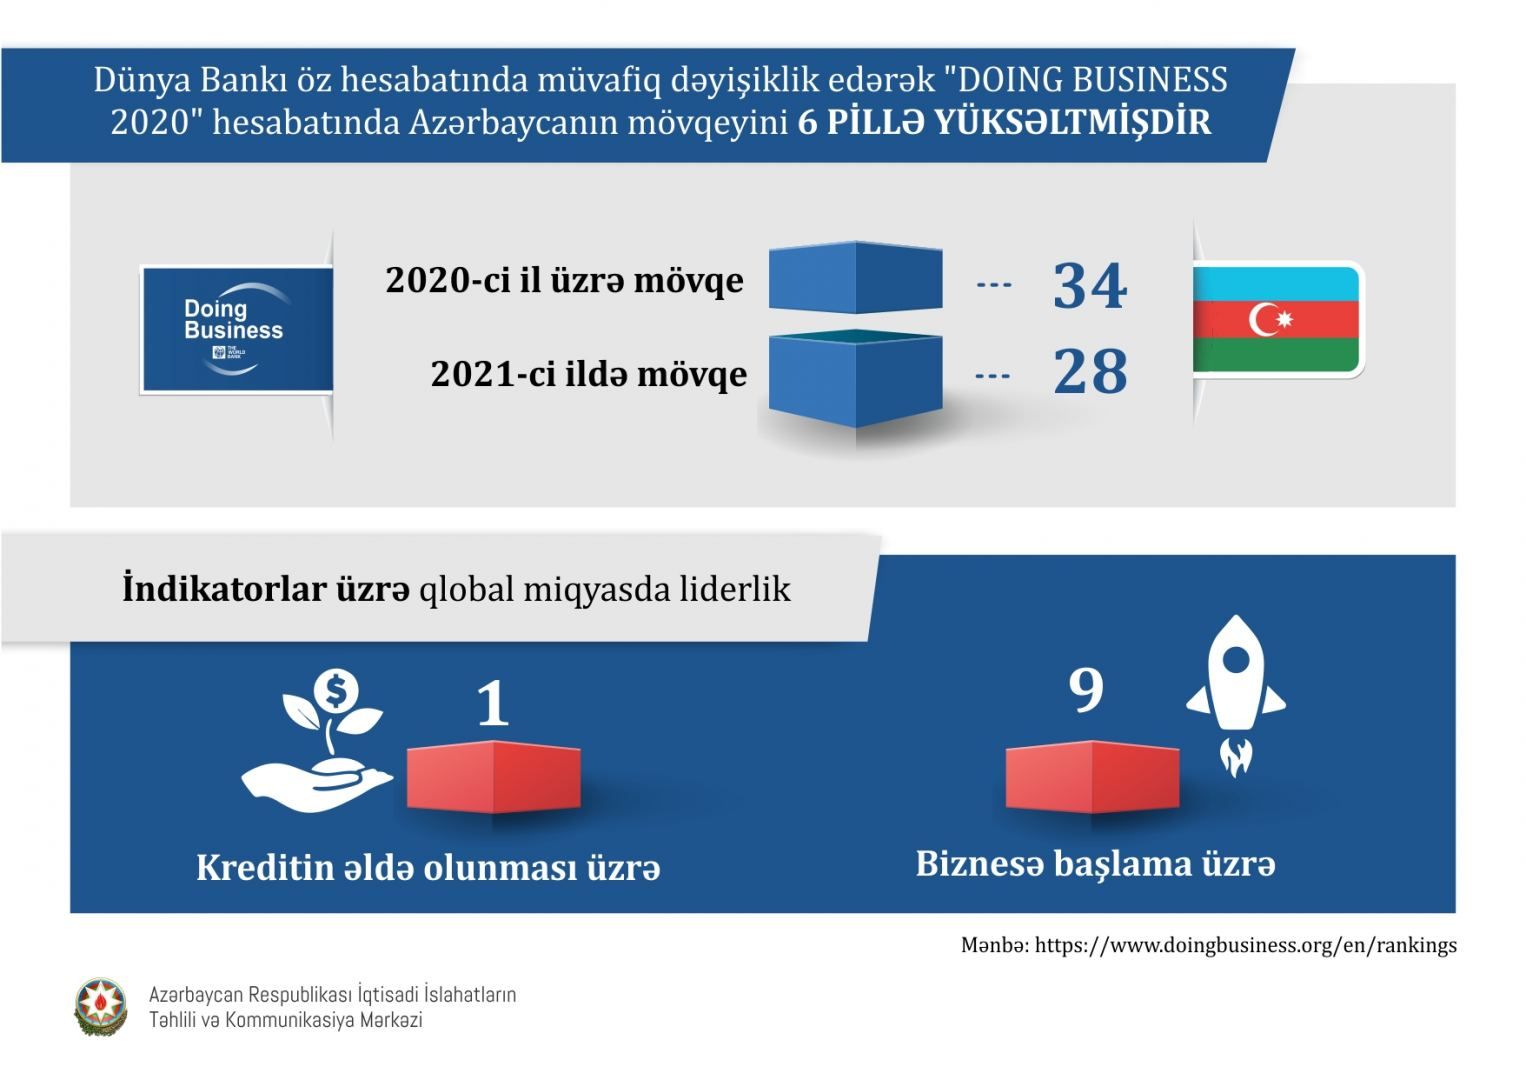 Économie : les positions de l'Azerbaïdjan dans les classements internationaux continuent de progresser